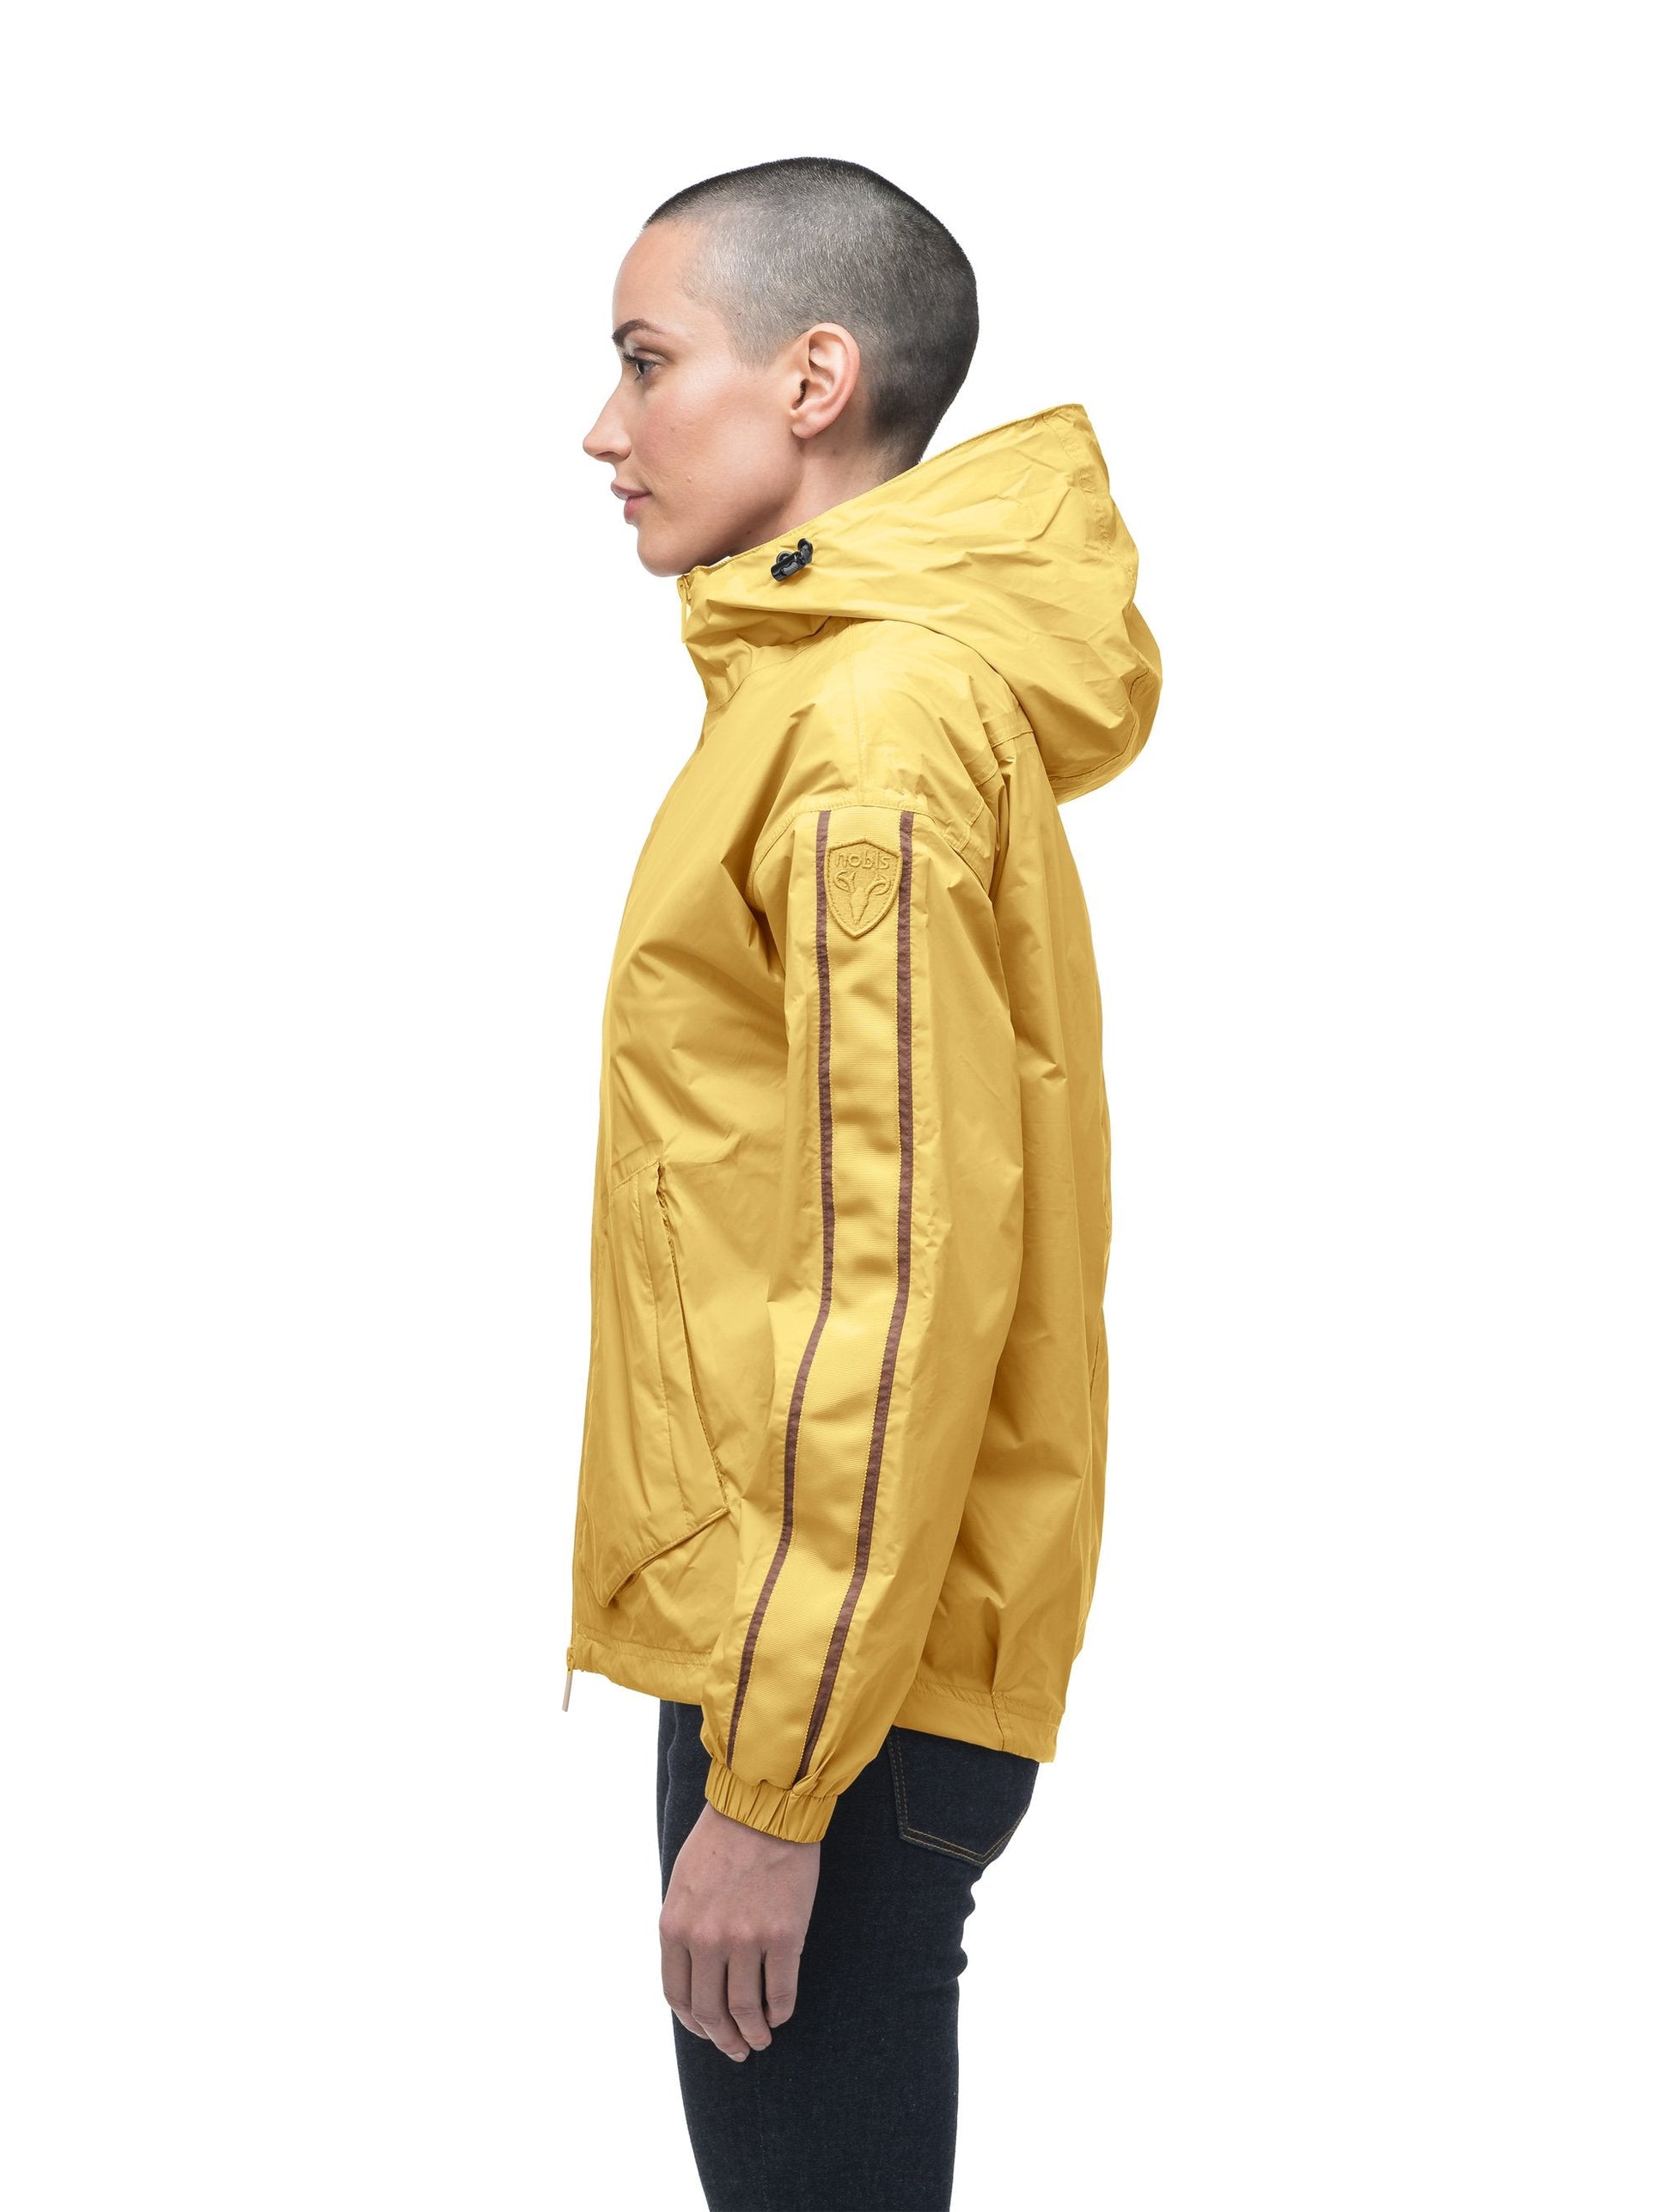 Women's waist length windbreaker with hood in Citron